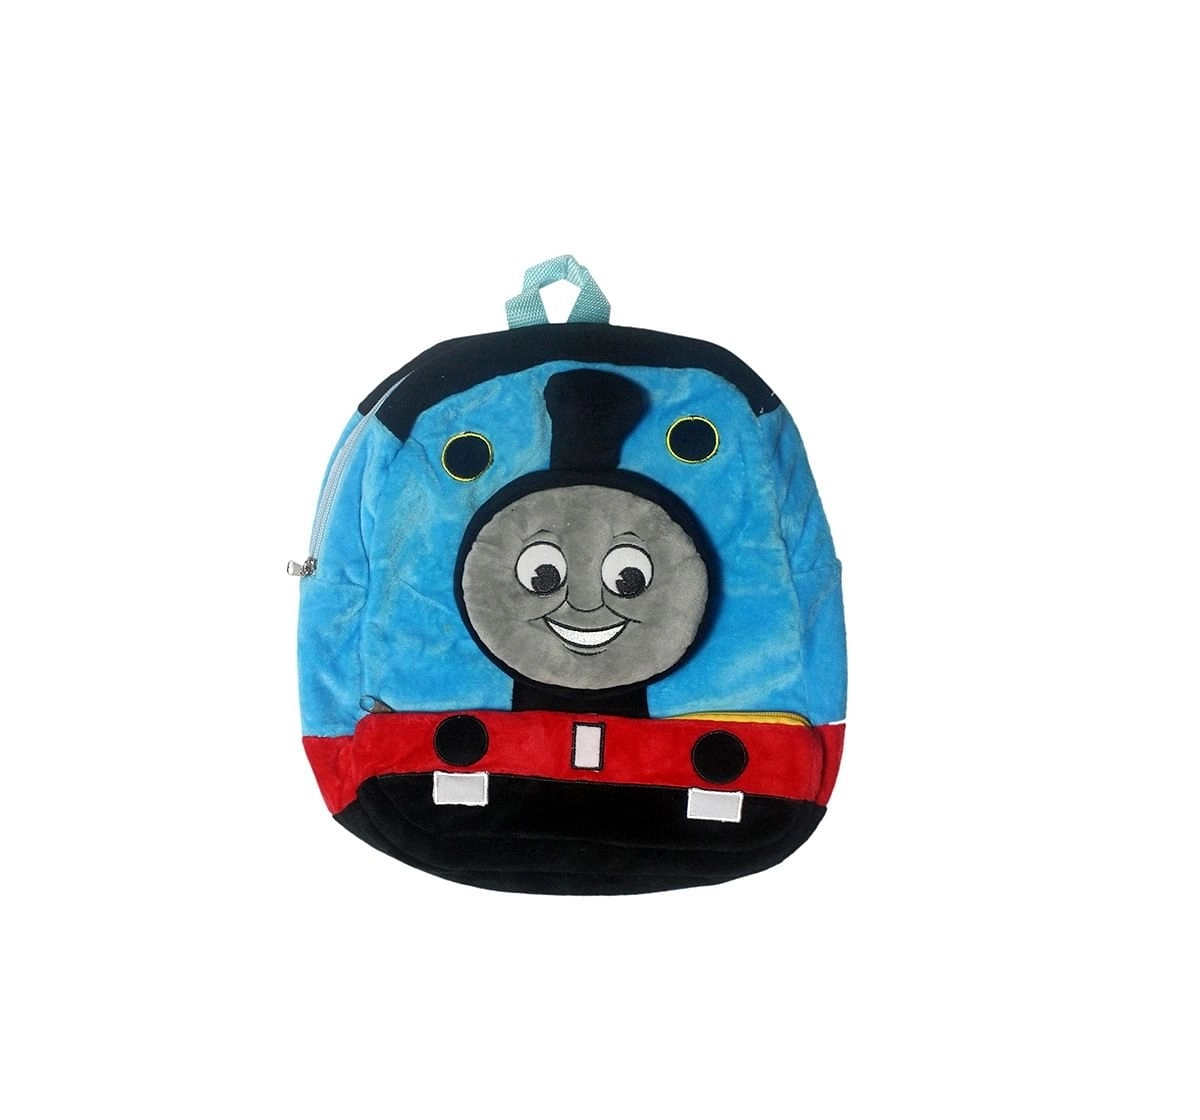 Thomas & Friends 3D Premium Plush Bag Plush Accessories for Kids age 12M+ - 30.48 Cm 